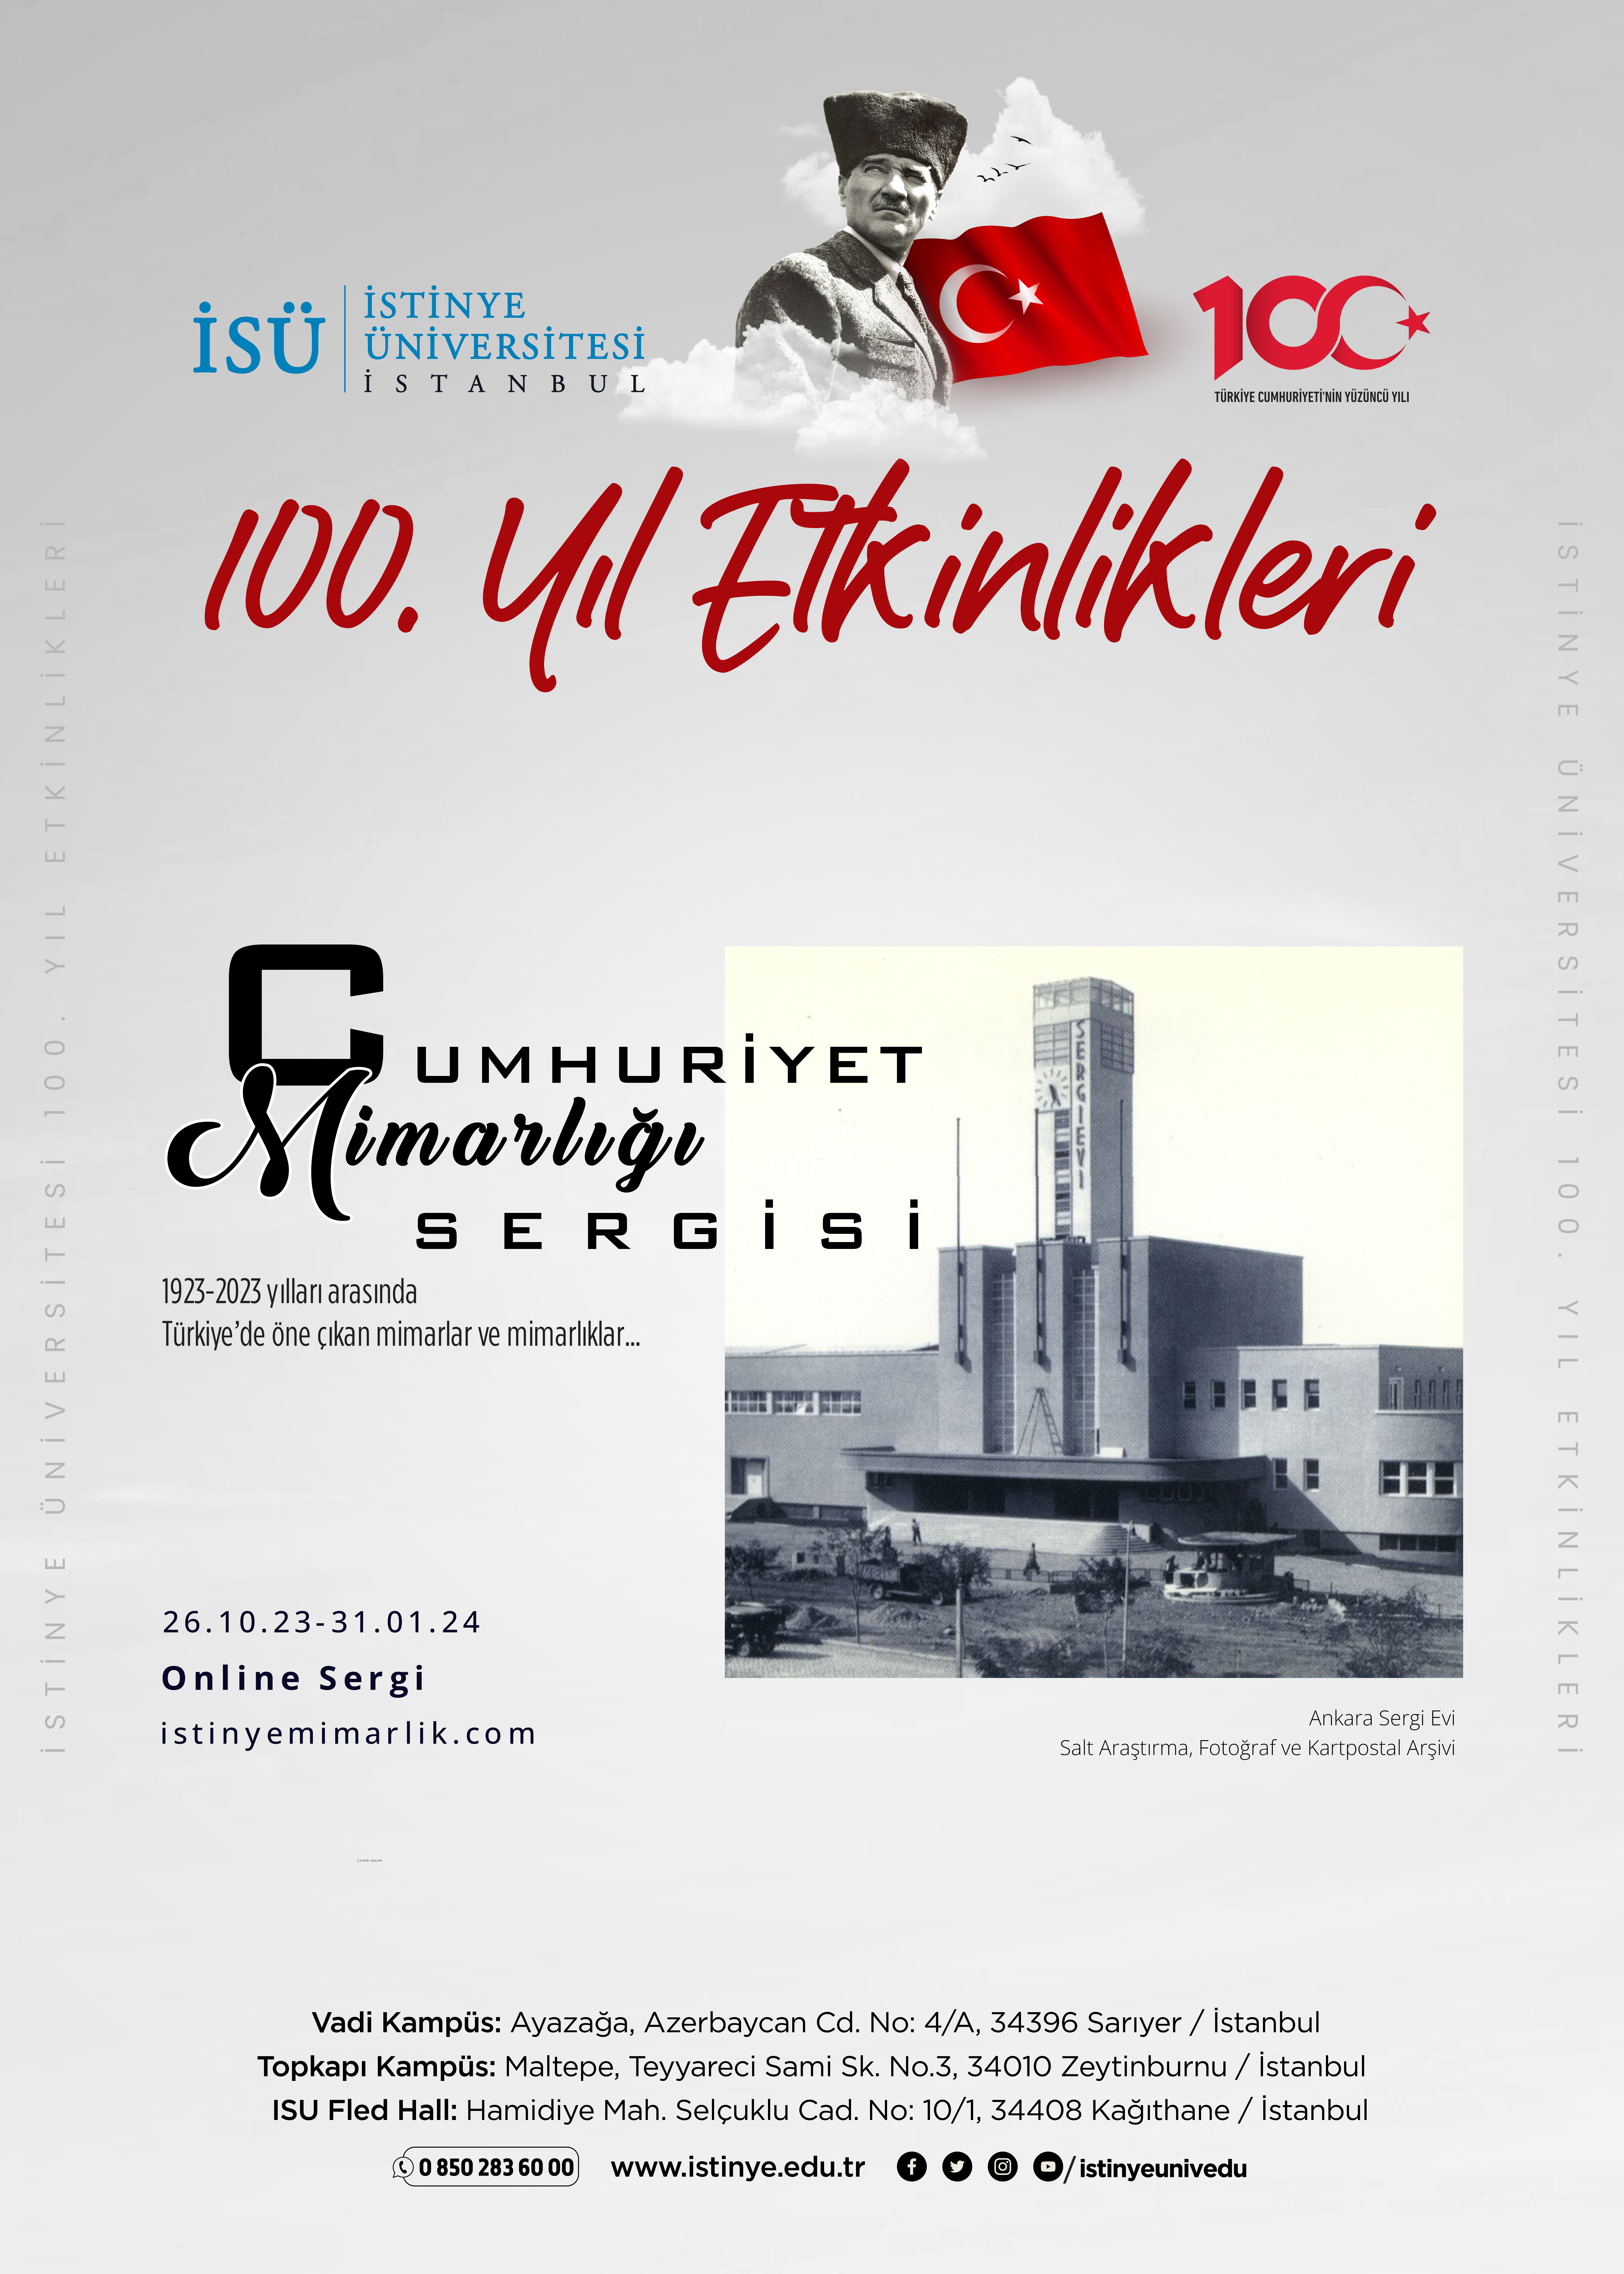 100. Yıl Etkinlikleri "Cumhuriyet Mimarlığı Sergisi"